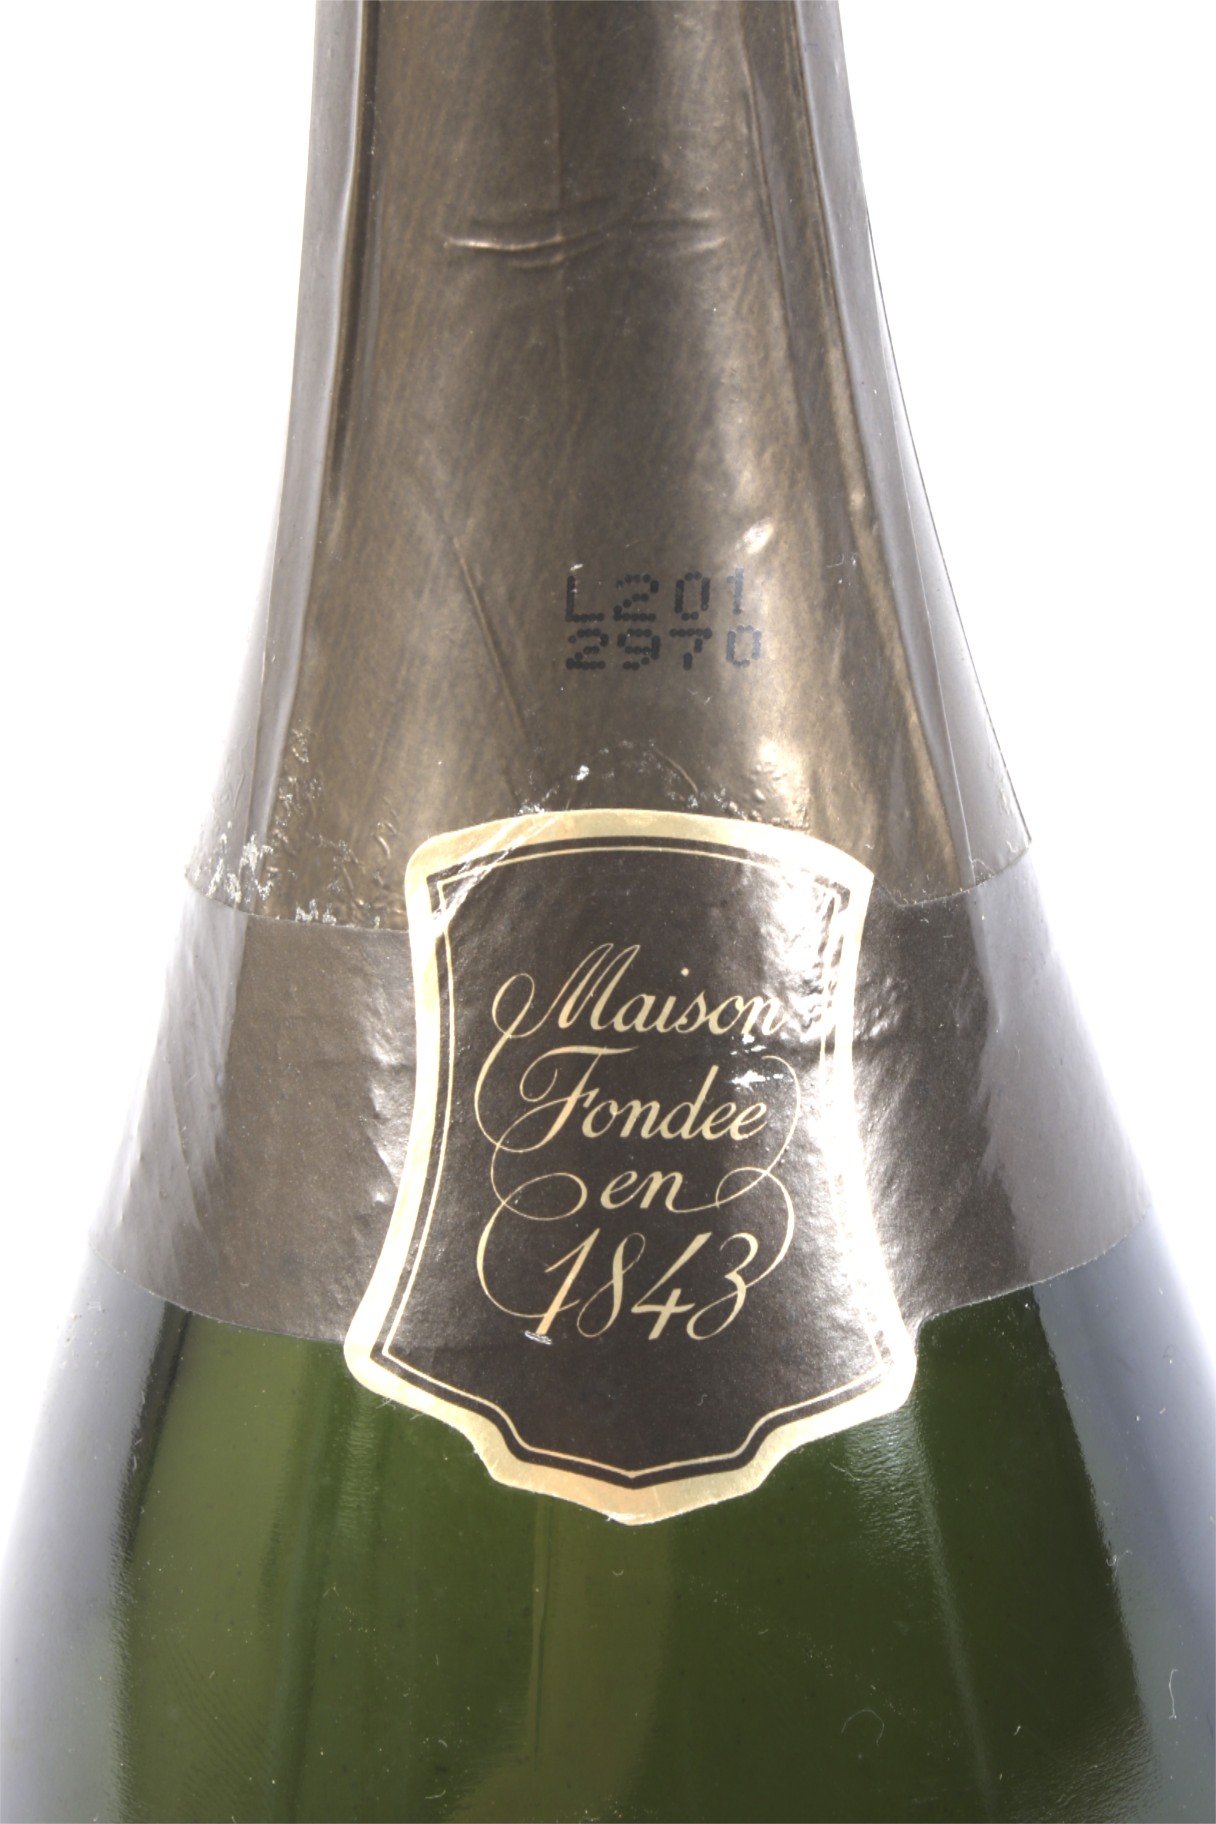 A bottle of Krug 1985 vintage champagne. - Image 2 of 2